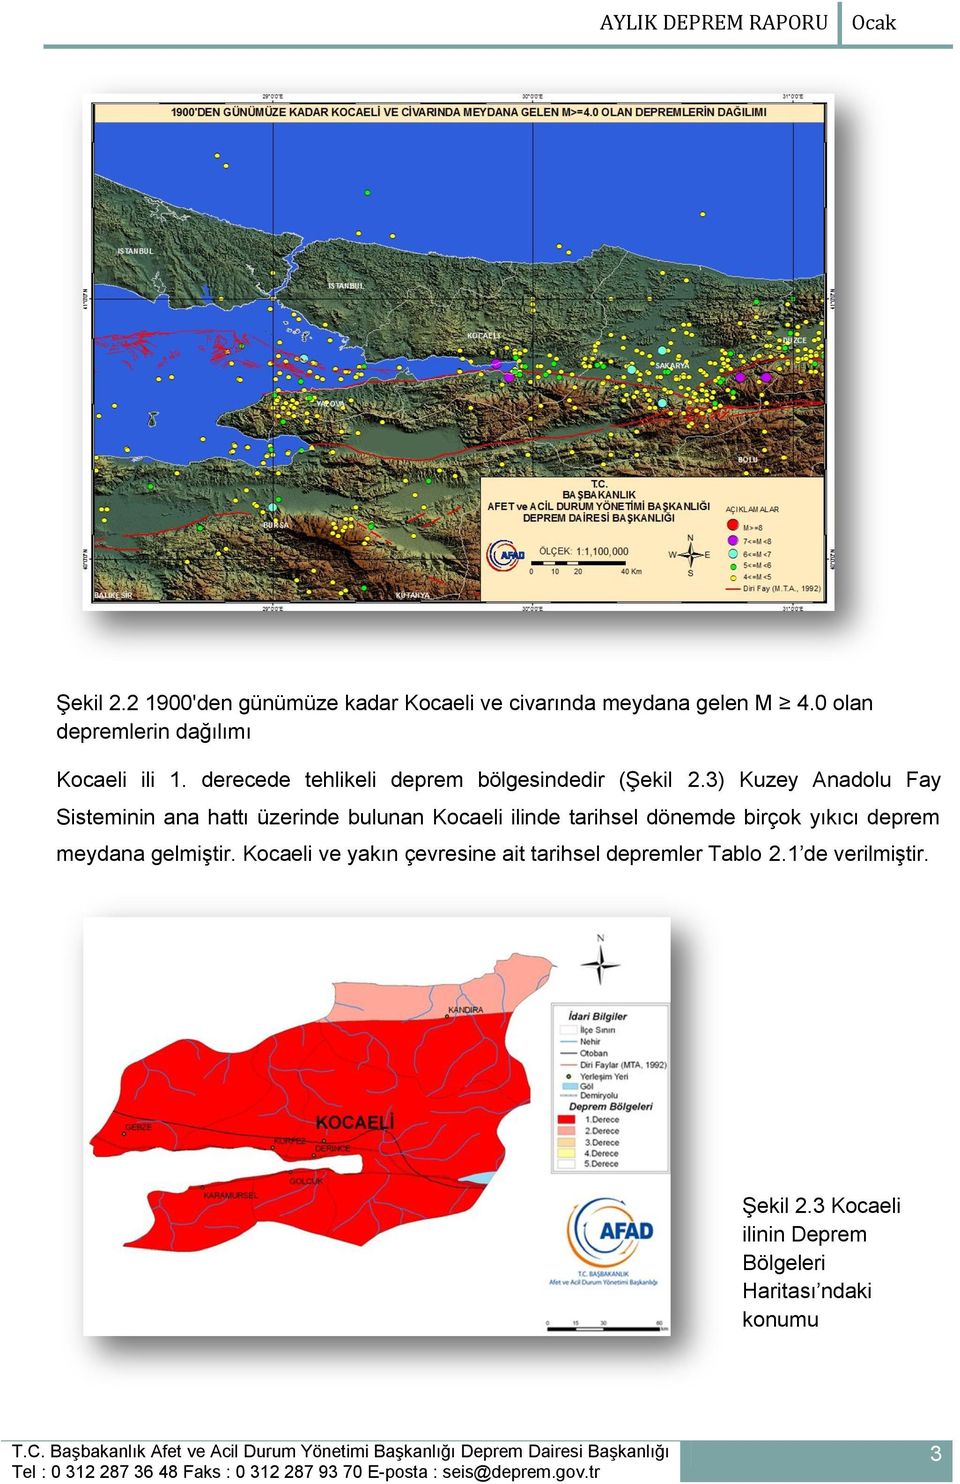 3) Kuzey Anadolu Fay Sisteminin ana hattı üzerinde bulunan Kocaeli ilinde tarihsel dönemde birçok yıkıcı